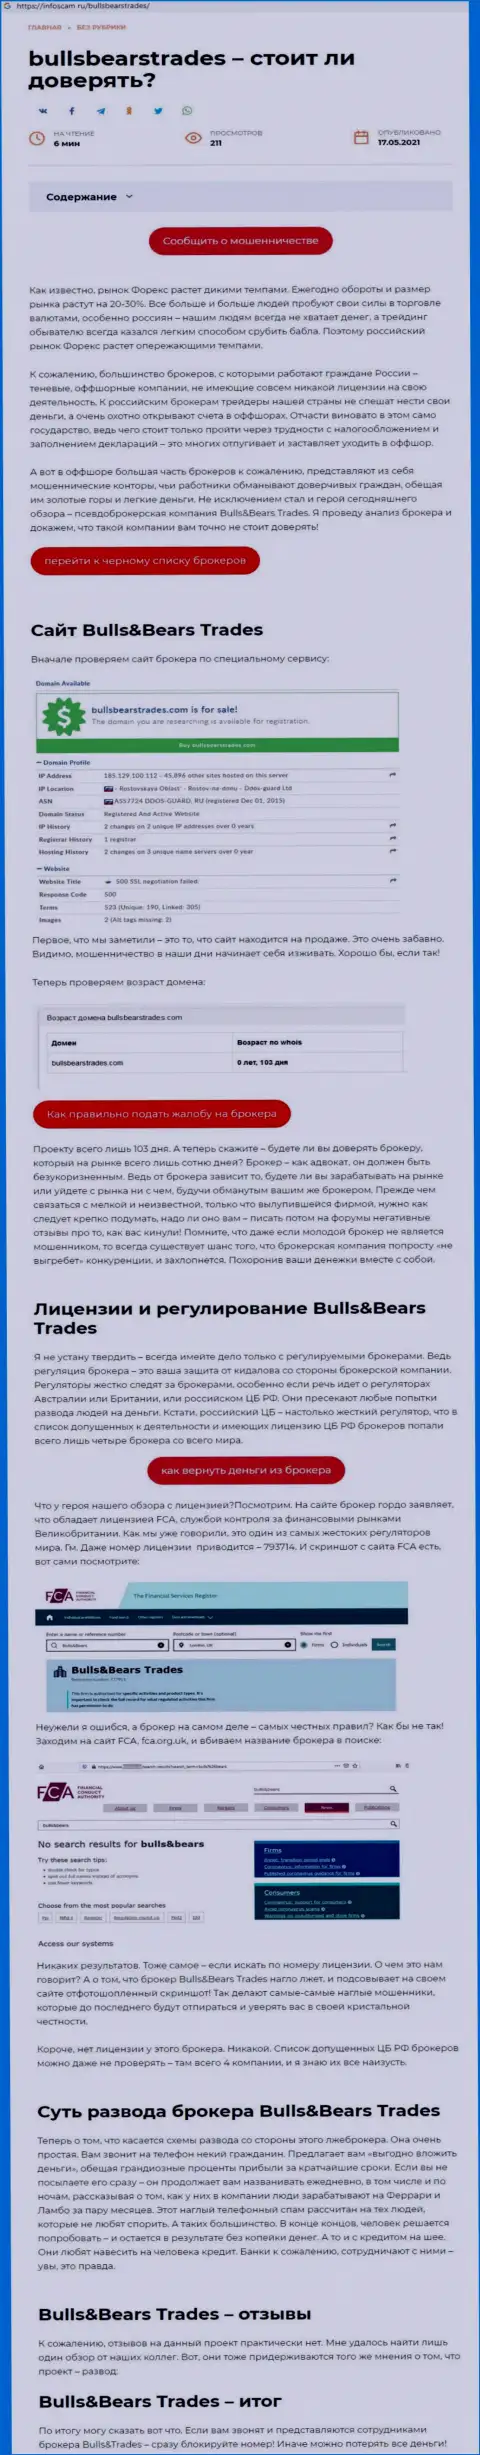 Bulls Bears Trades это МОШЕННИК !!! Способы одурачивания (обзор афер)